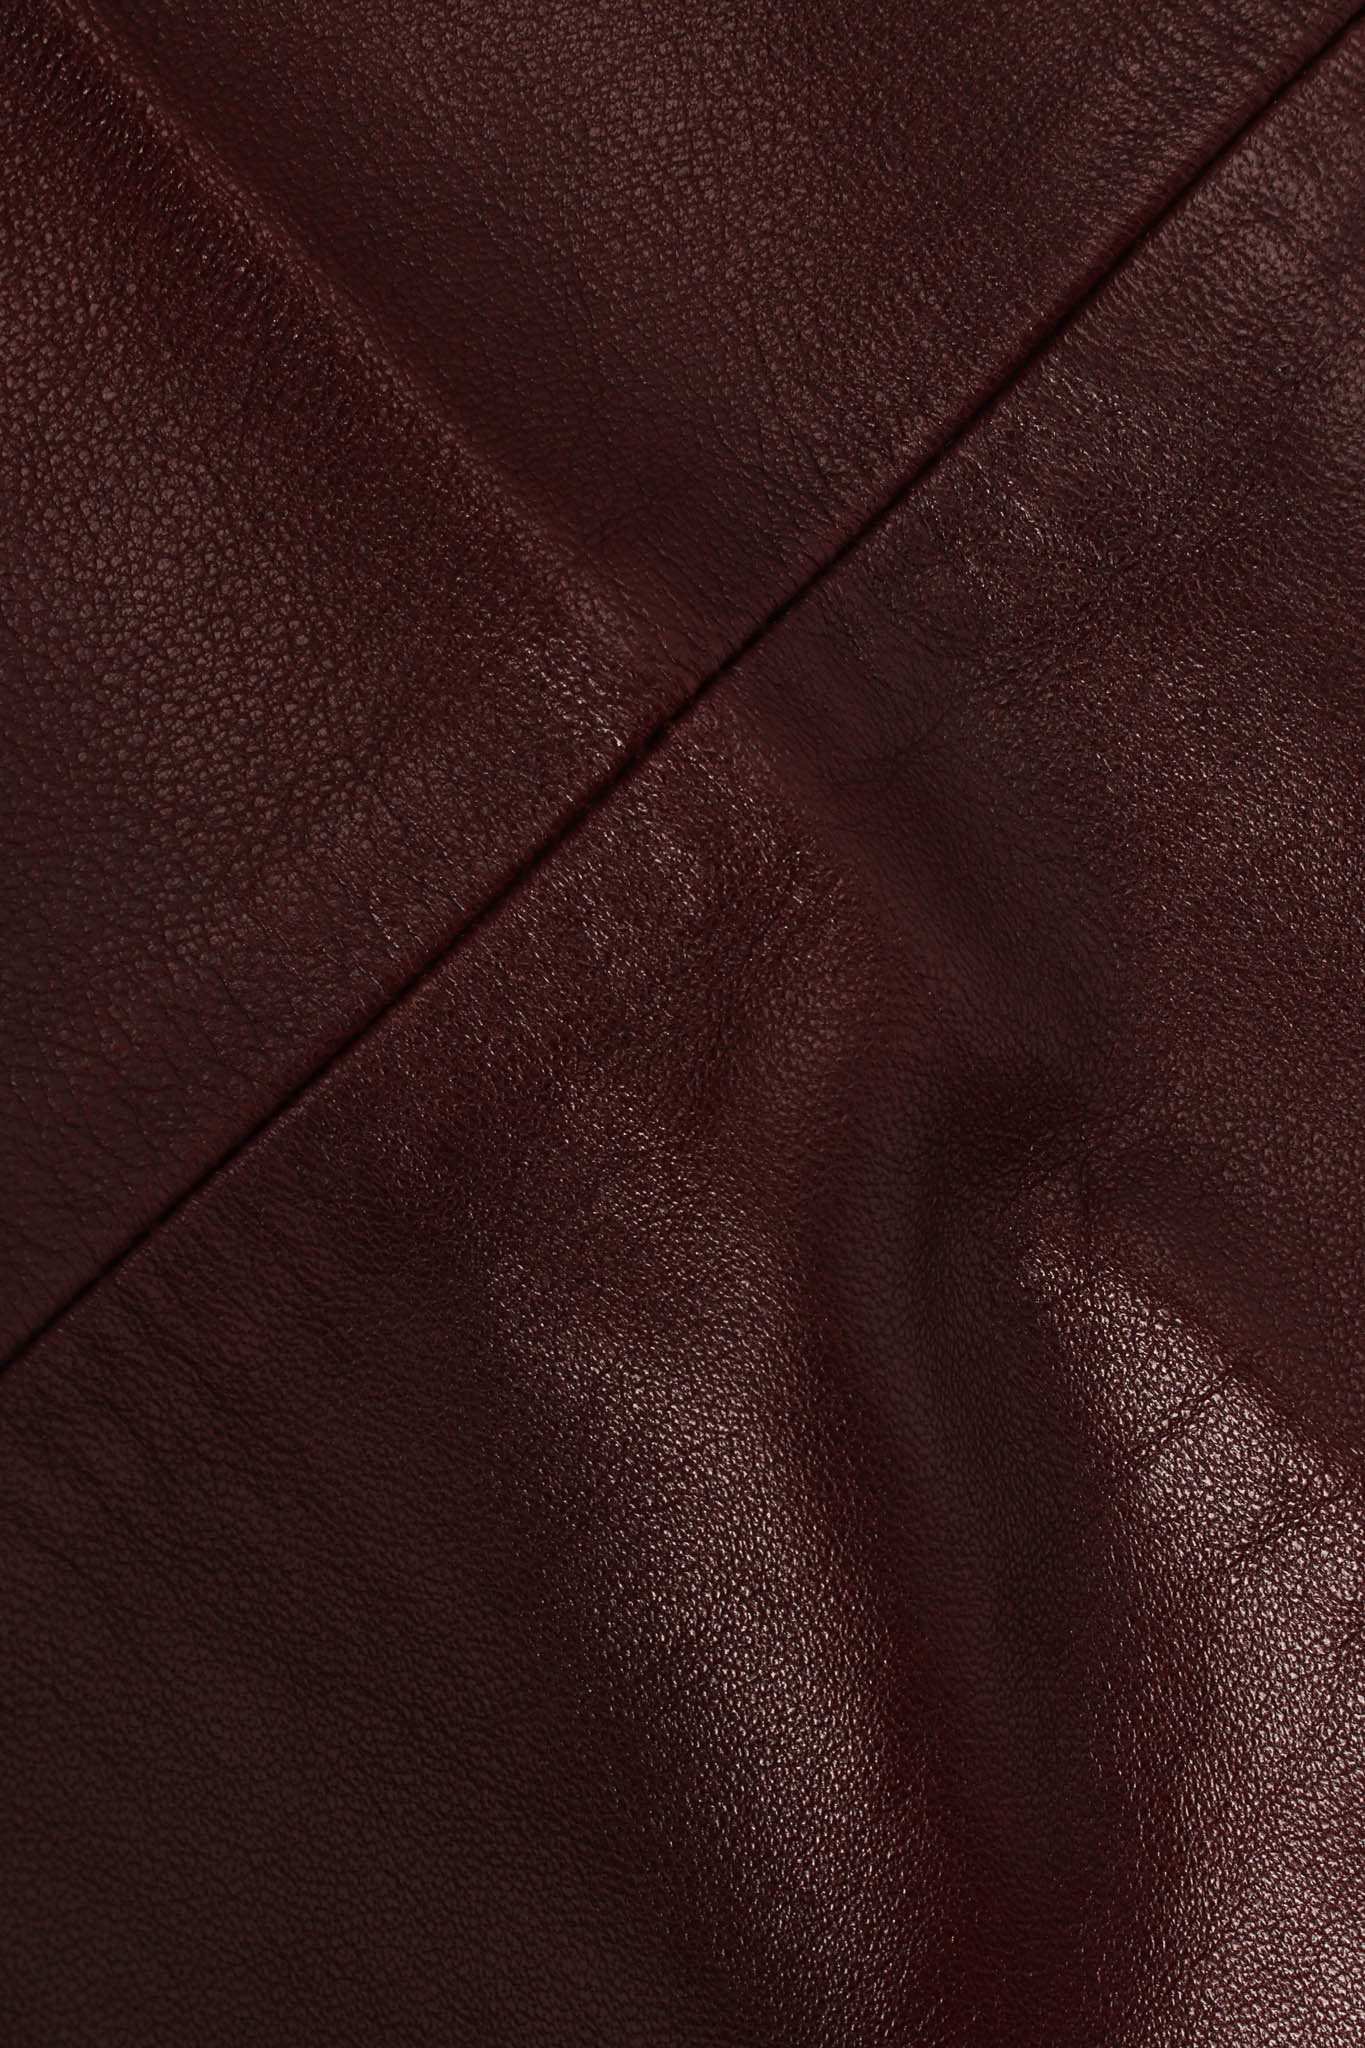 Vintage Saint Laurent Oxblood Lambskin Leather Pant leather close up @ Recess LA